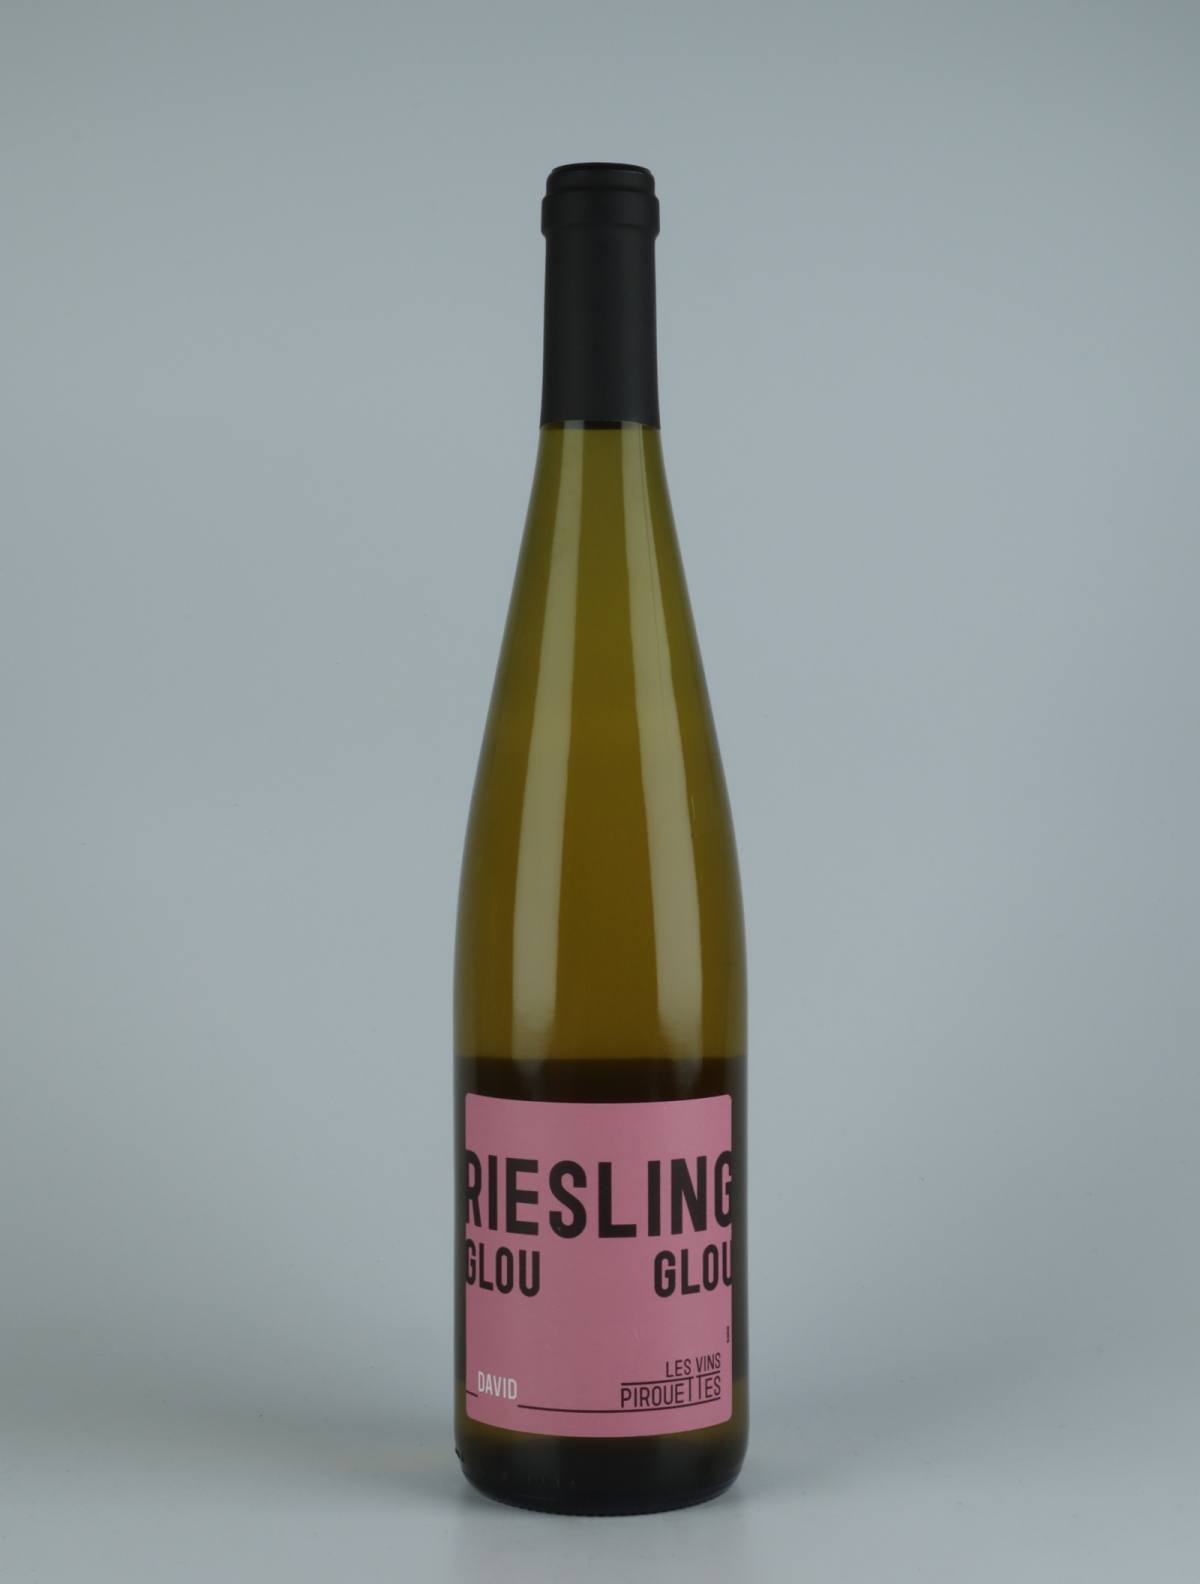 En flaske 2018 Riesling Glou Glou de David Hvidvin fra Les Vins Pirouettes, Alsace i Frankrig